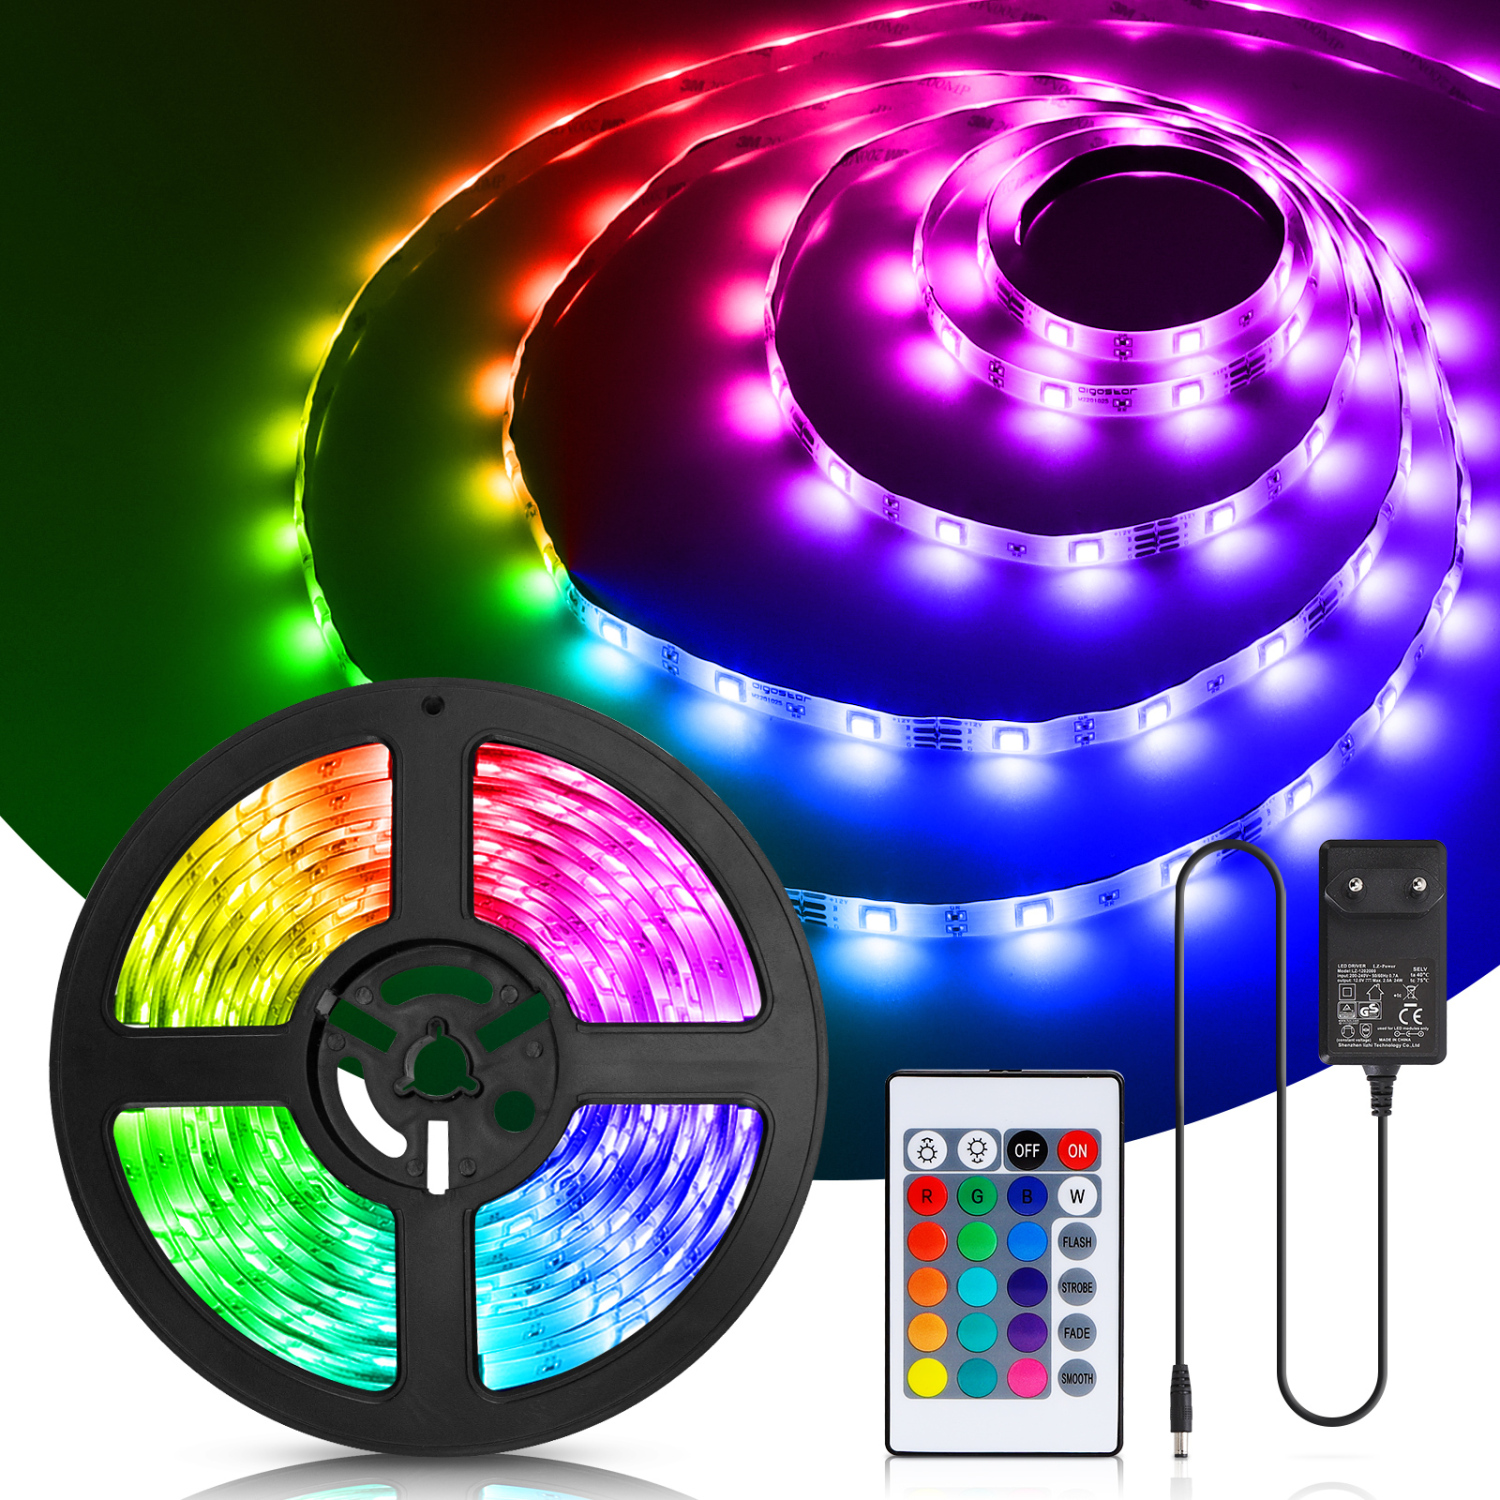 Aigostar LED Strip 5M, RGB LED Strip met Afstandsbediening, IP65 Waterdichte, LED Strip Light voor Thuis, TV, Slaapkamer, Keuken, Party, Veranda, Feest, Bar [Energieklasse A]